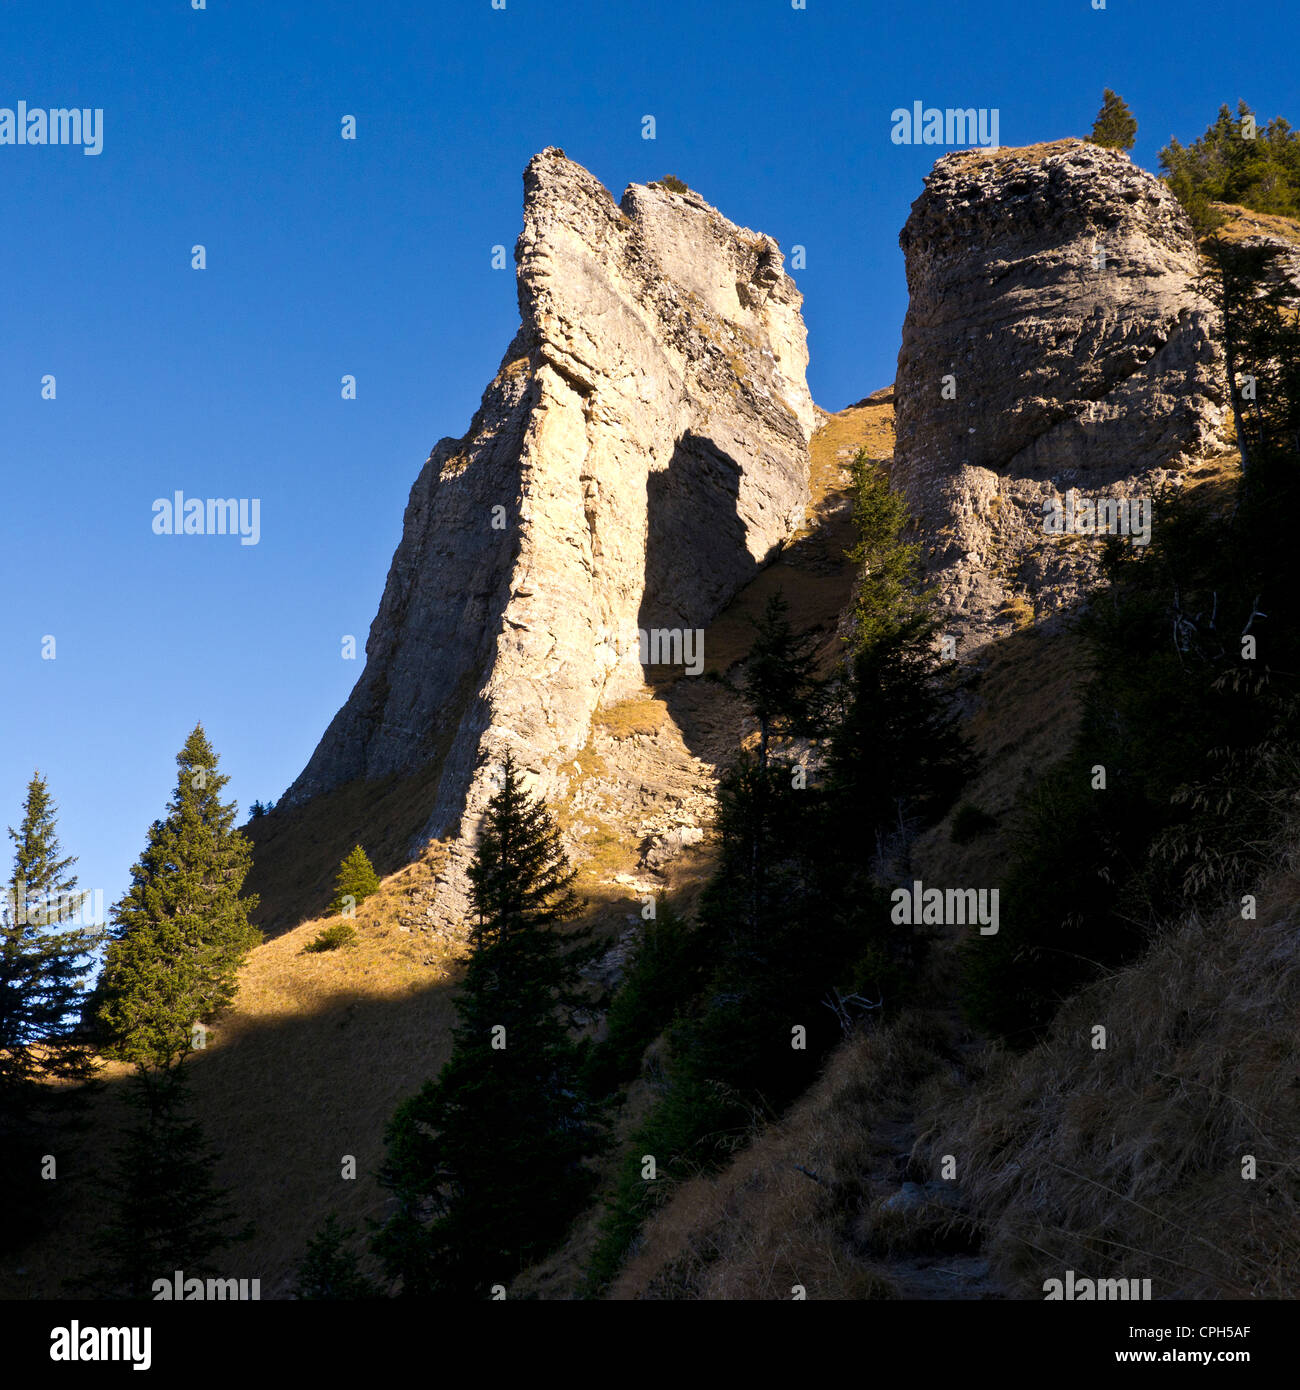 Alps, mountains, cliff, rock face, escarpment, limestone, wall of rock, crag, mountainscape, mountain scenery, mountain landscap Stock Photo